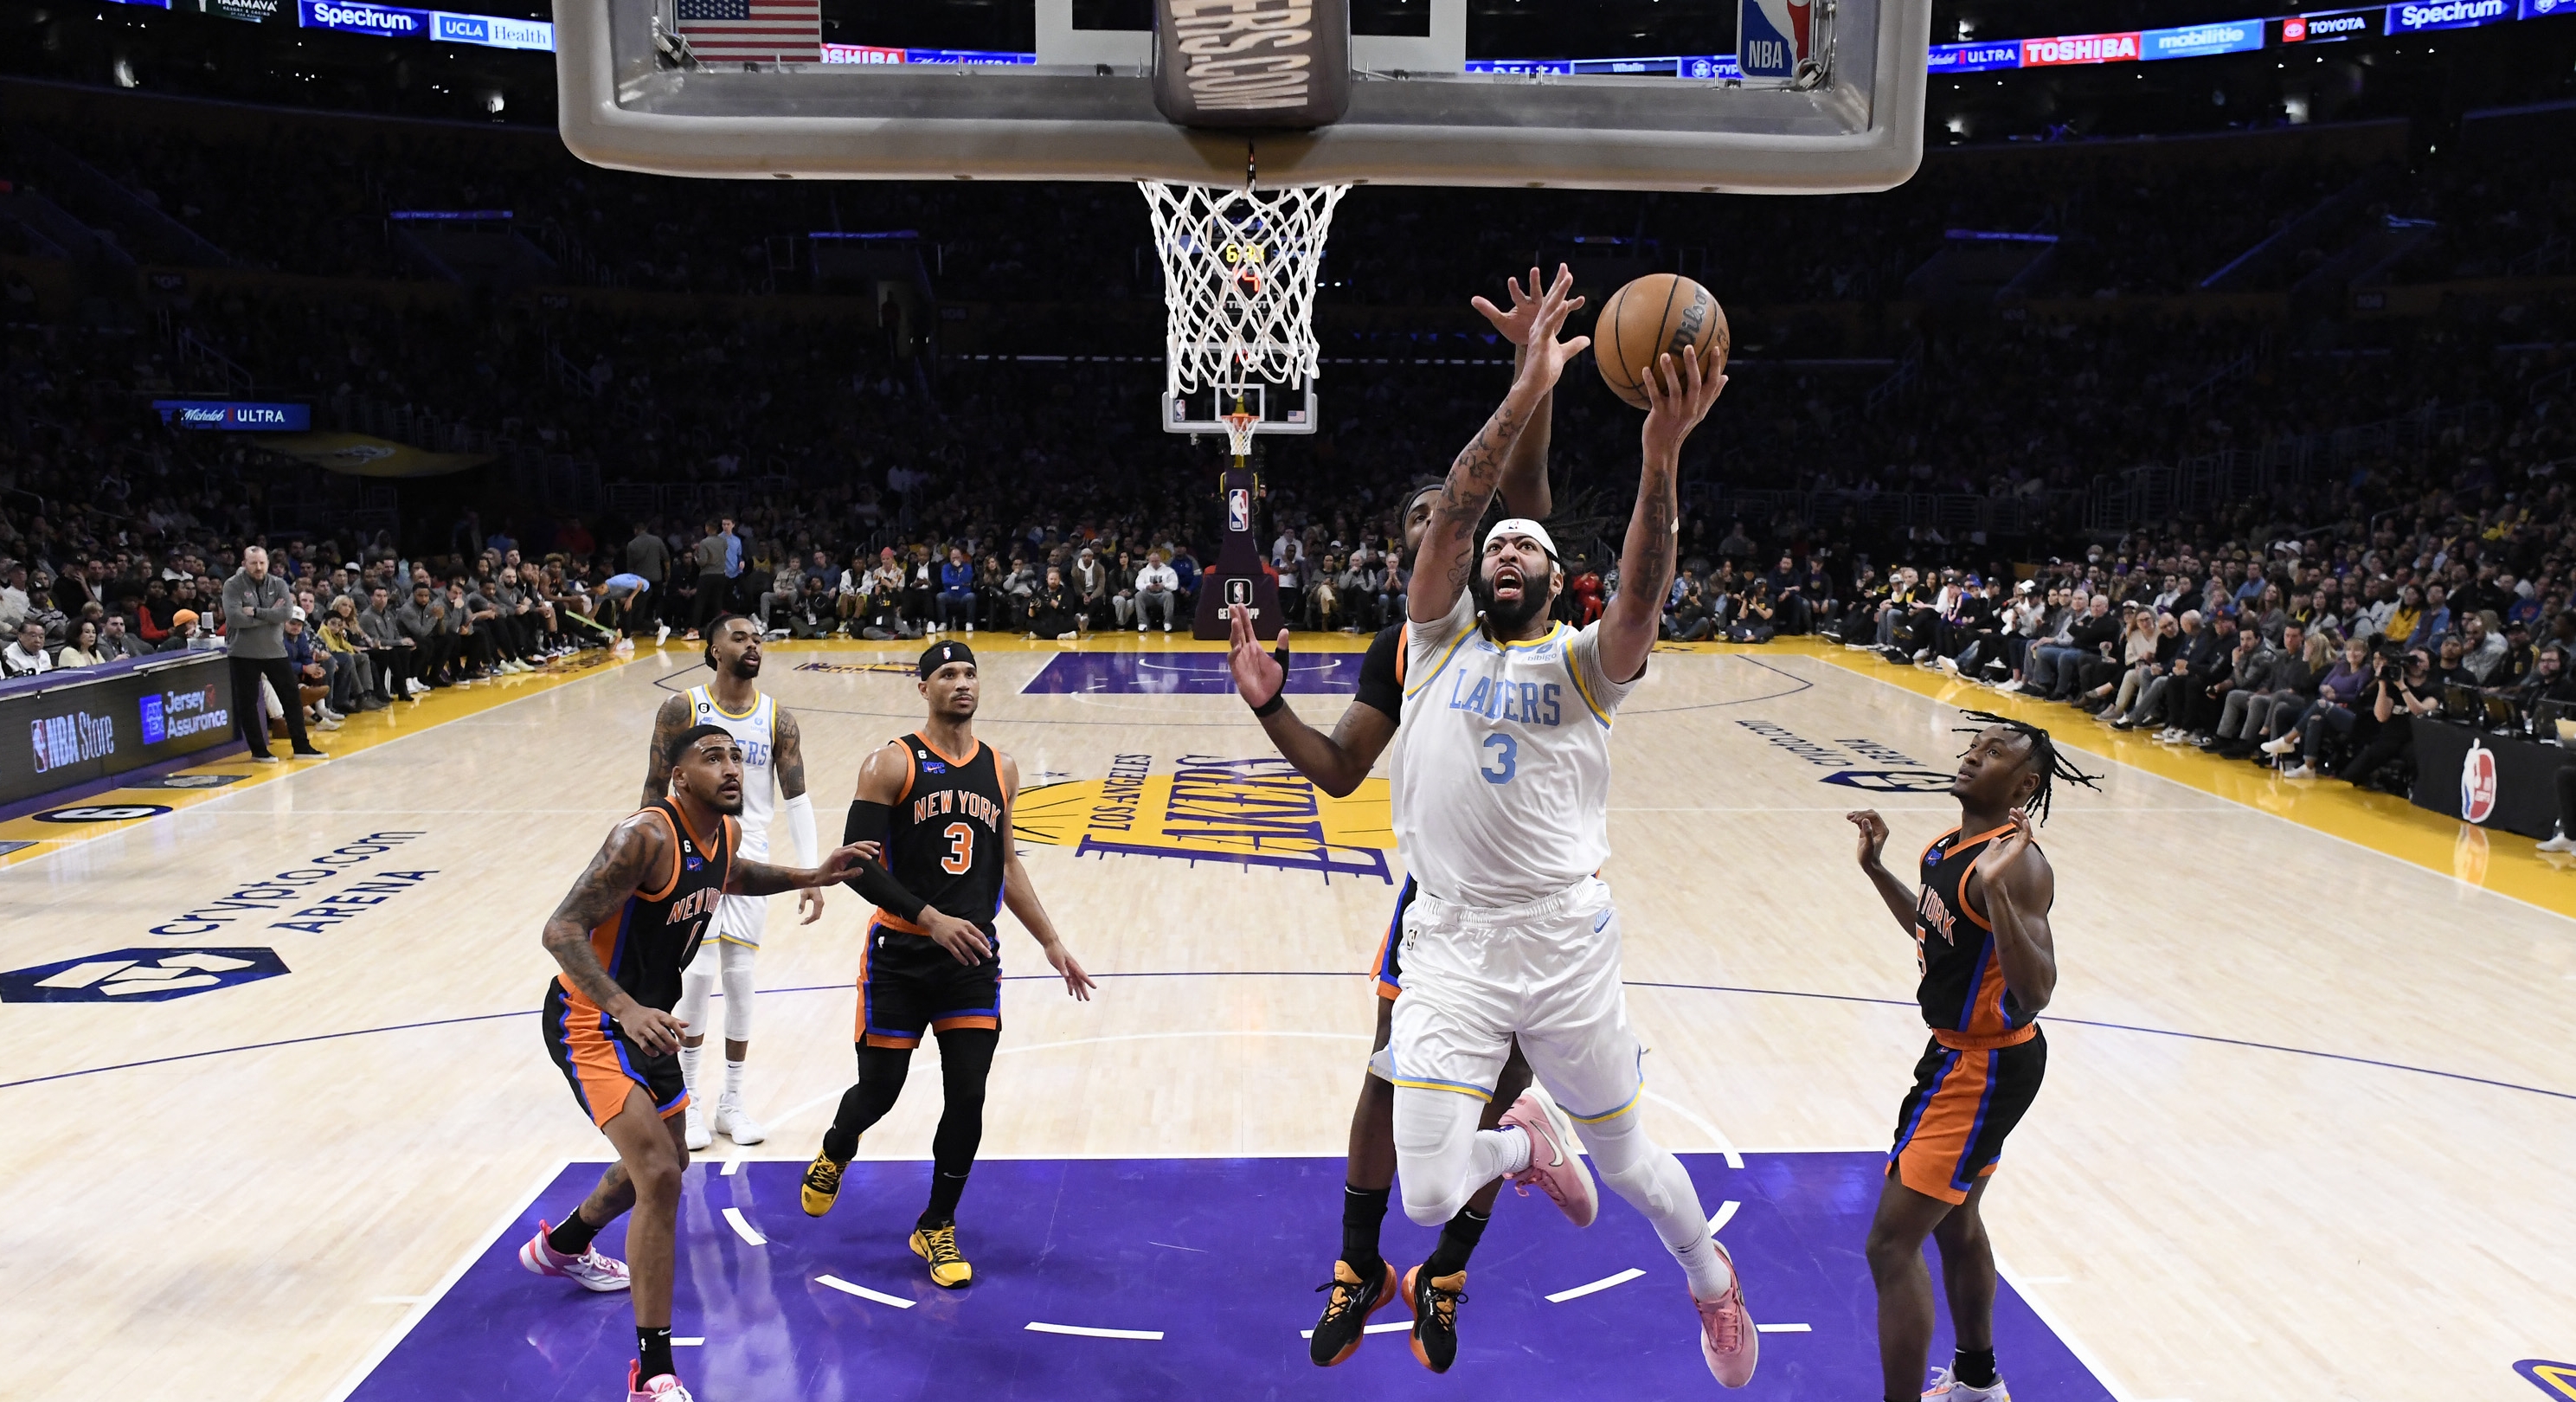 La NBA se ha visto en problemas por algunos desaciertos arbitrales y por ello implementarán dicha tecnología. (Foto Prensa Libre: AFP)